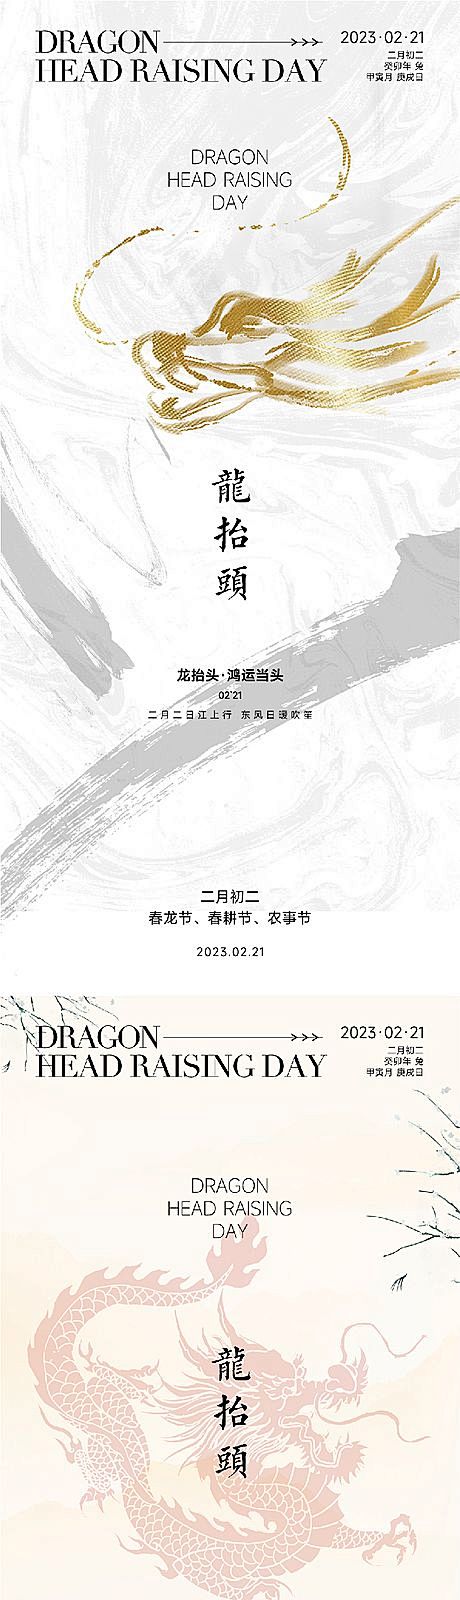 【仙图网】海报 中国传统节日 二月二 龙...